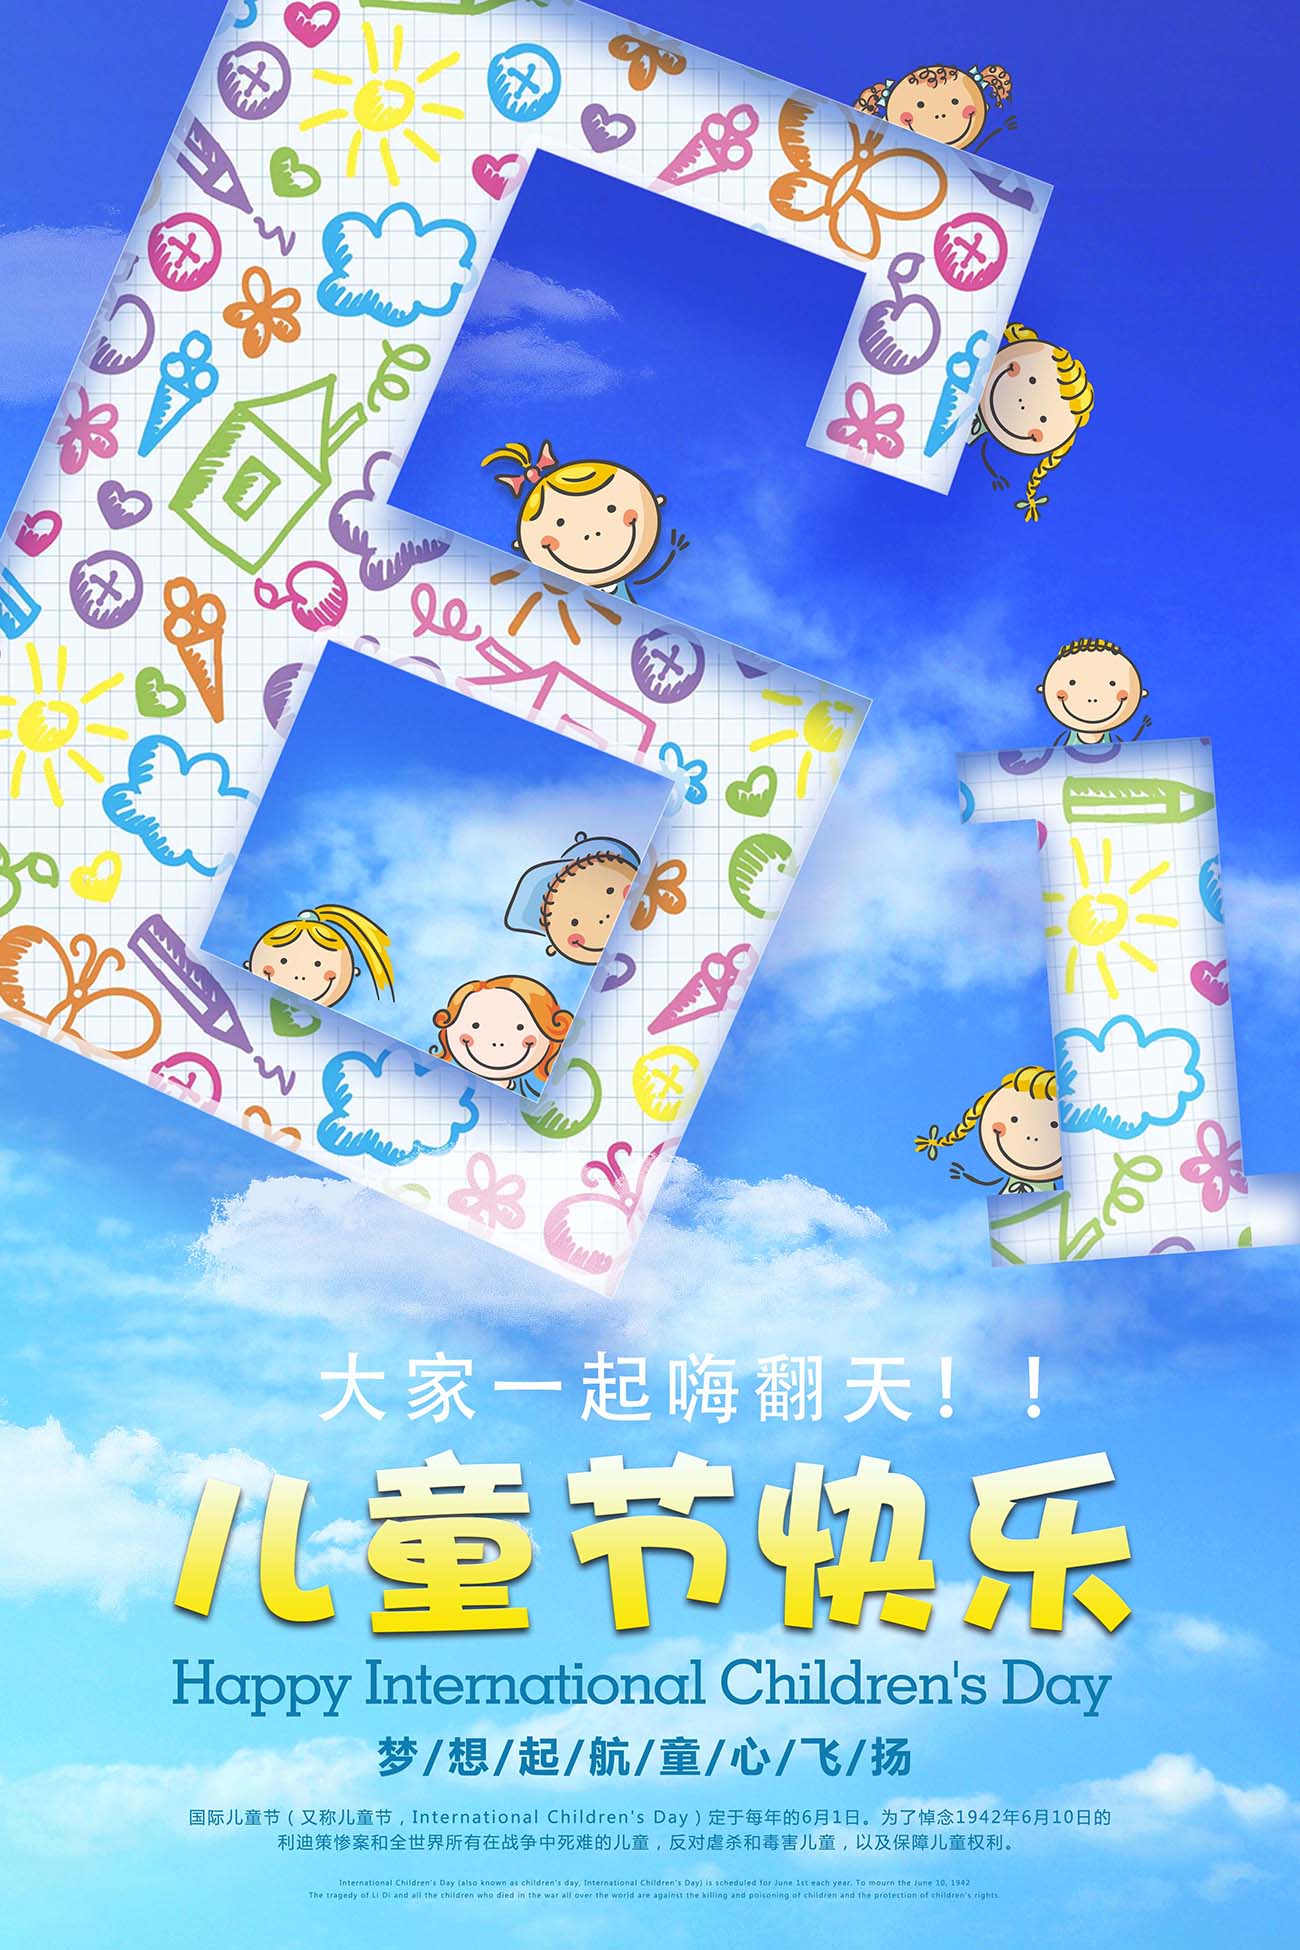 61六一儿童节快乐嗨翻天促销海报设计PSD源文件